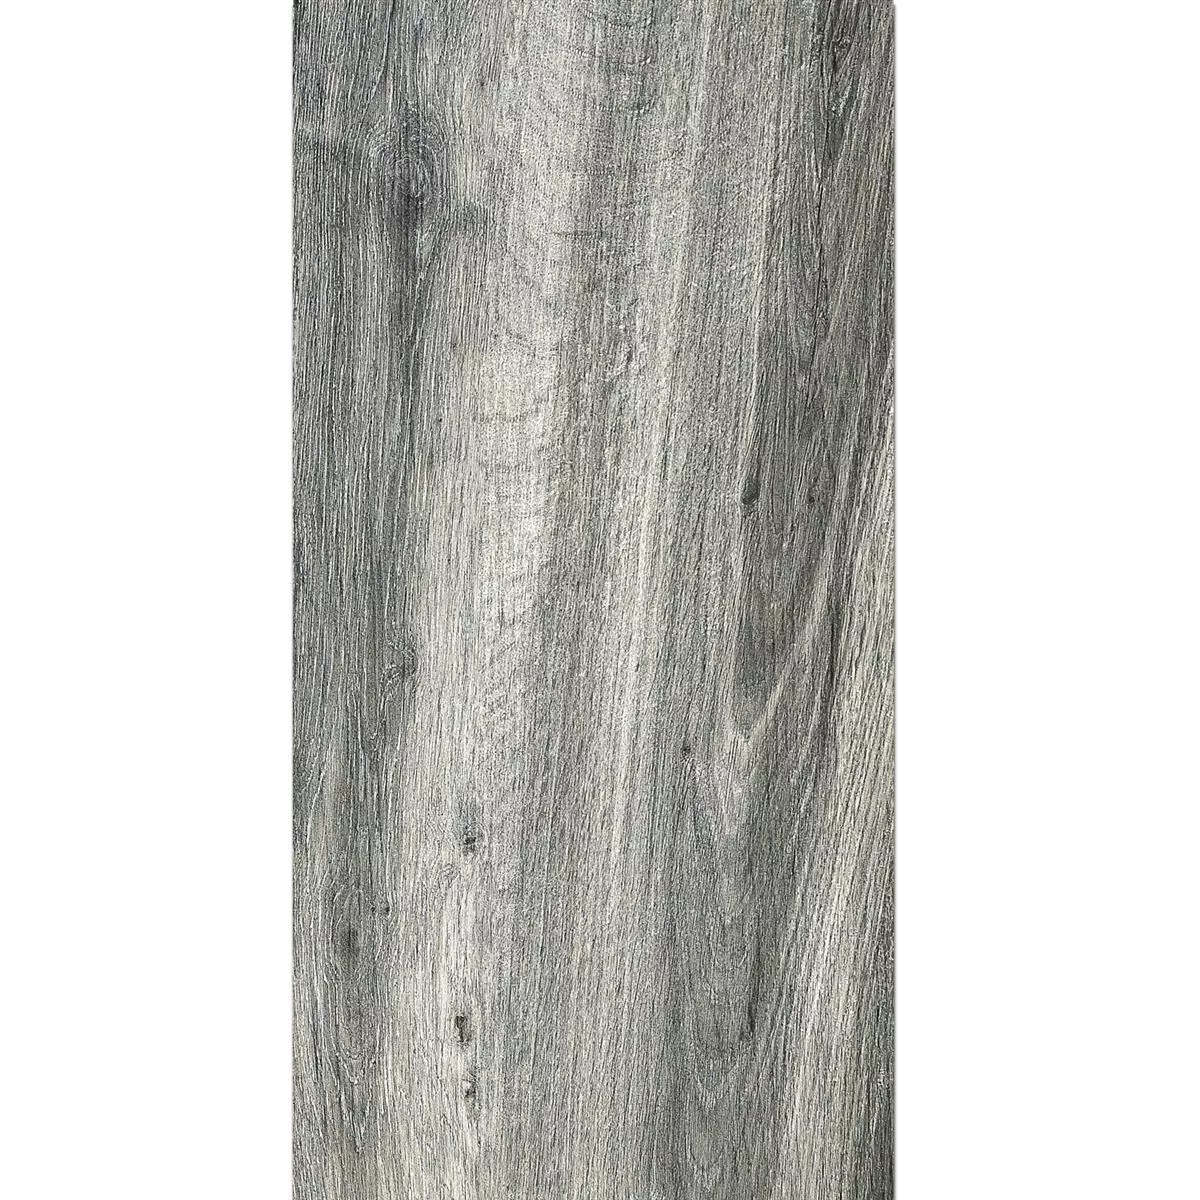 Próbka Taras Płyta Starwood Wygląd Drewna Grey 45x90cm